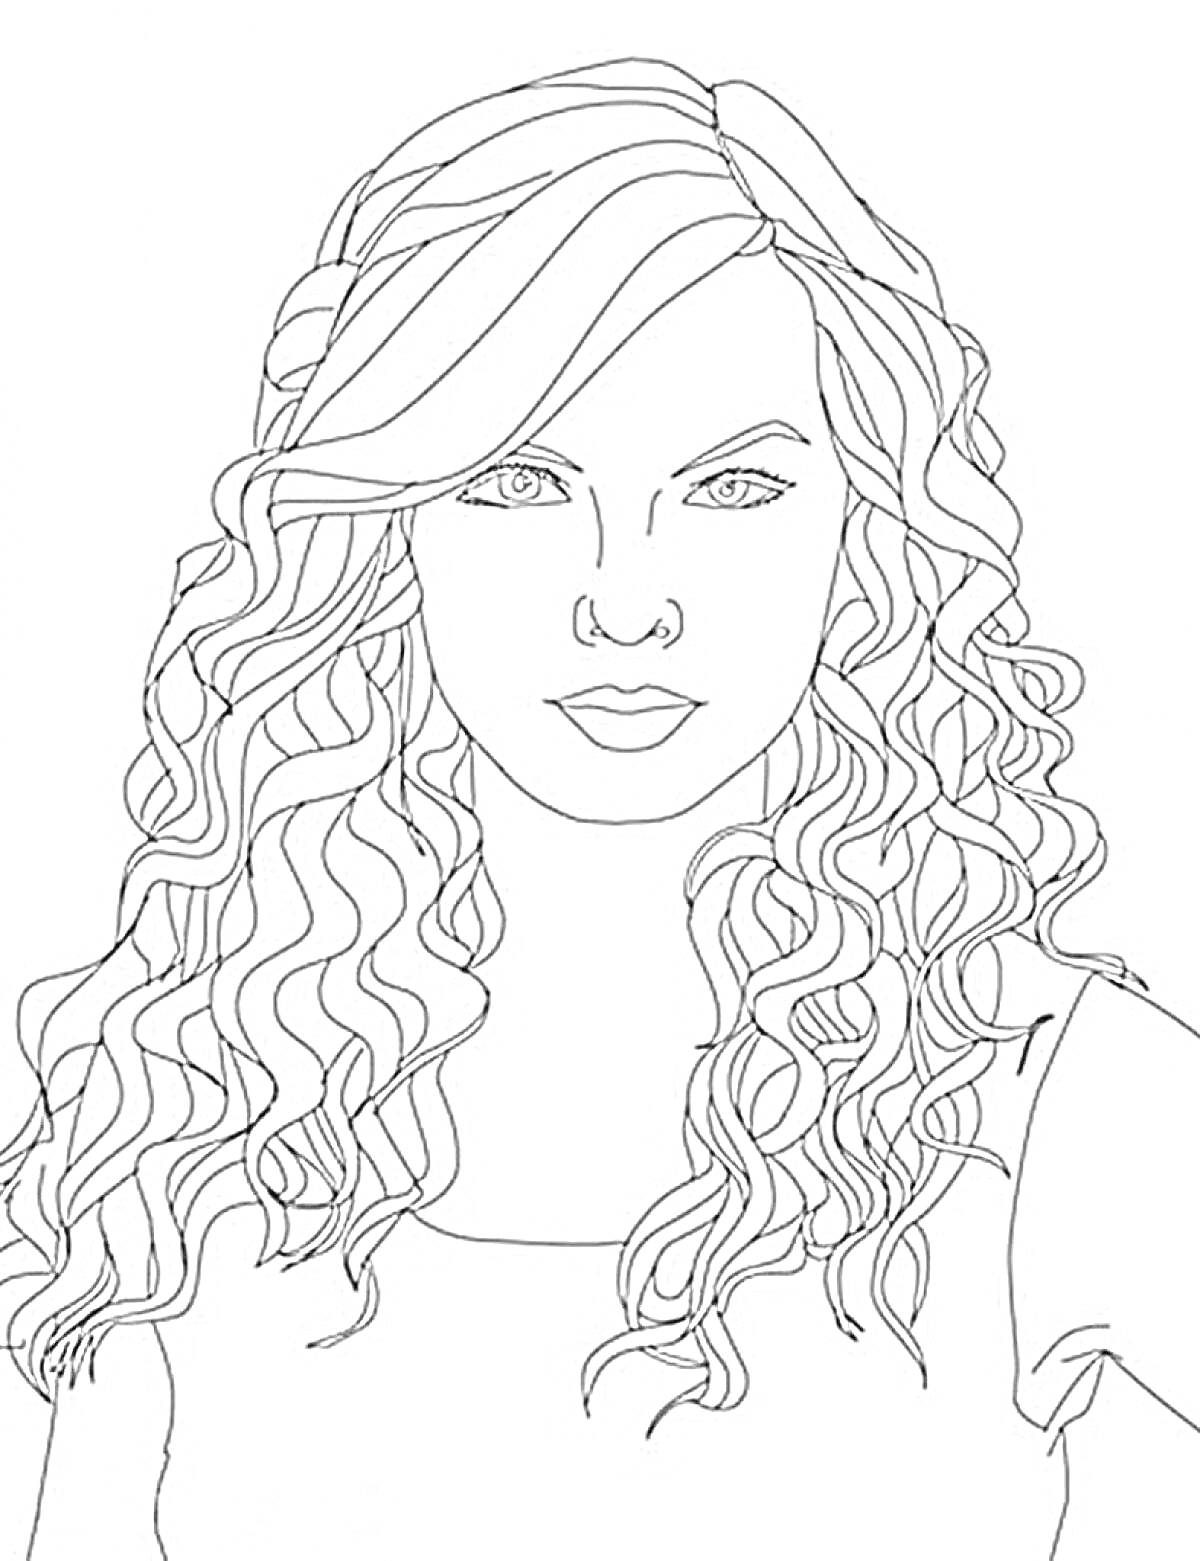 Раскраска Портрет девушки с длинными волнистыми волосами и челкой